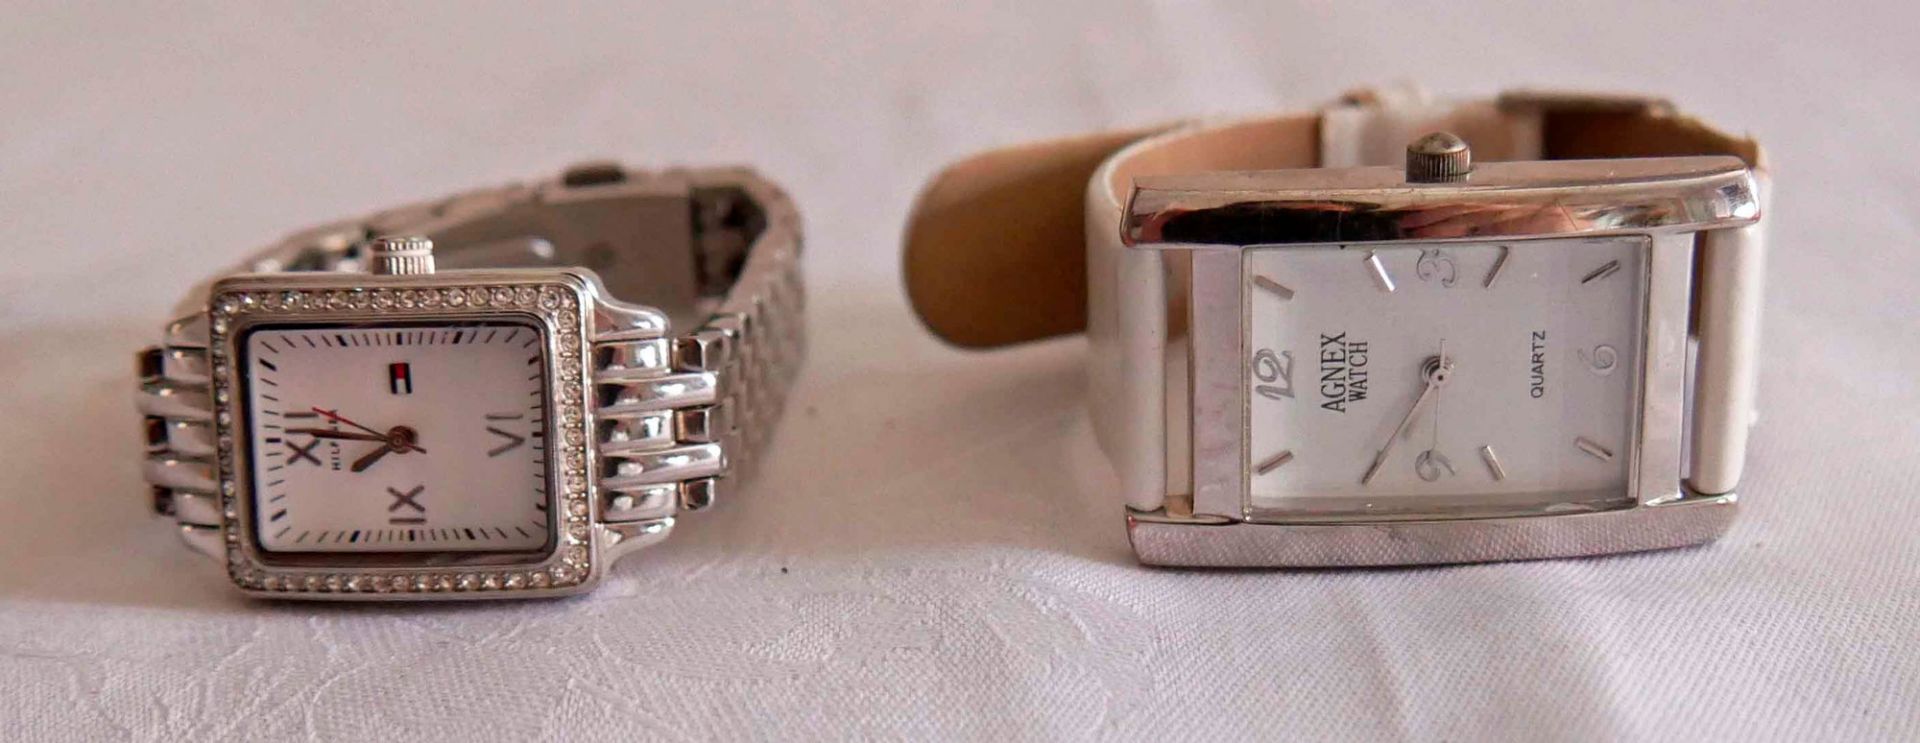 2 Damen Armbanduhren, dabei 1x Hilfiger sowie 1x Agnex Watch. Guter Zustand